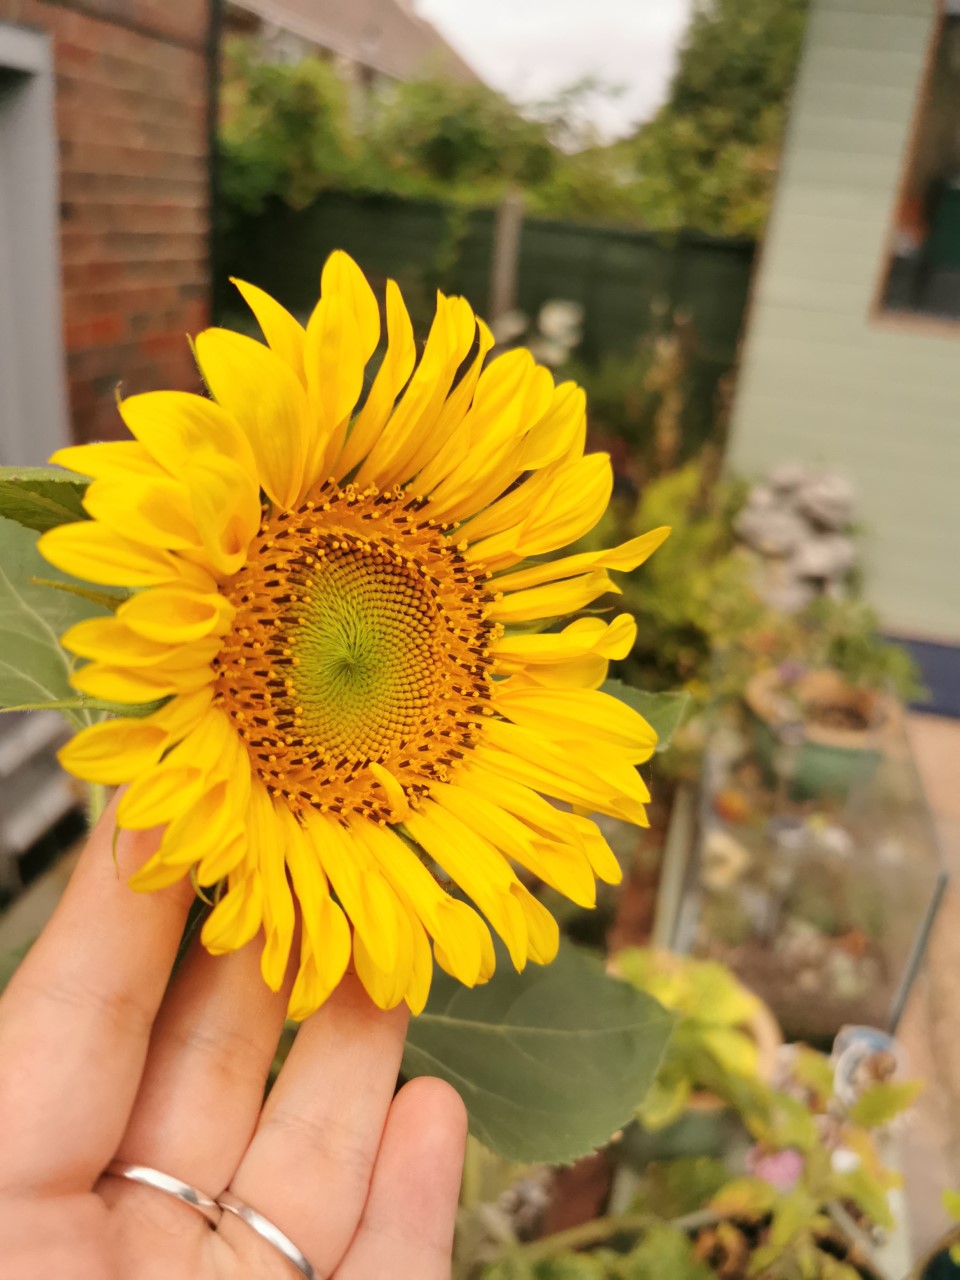 Anna S' sunflower